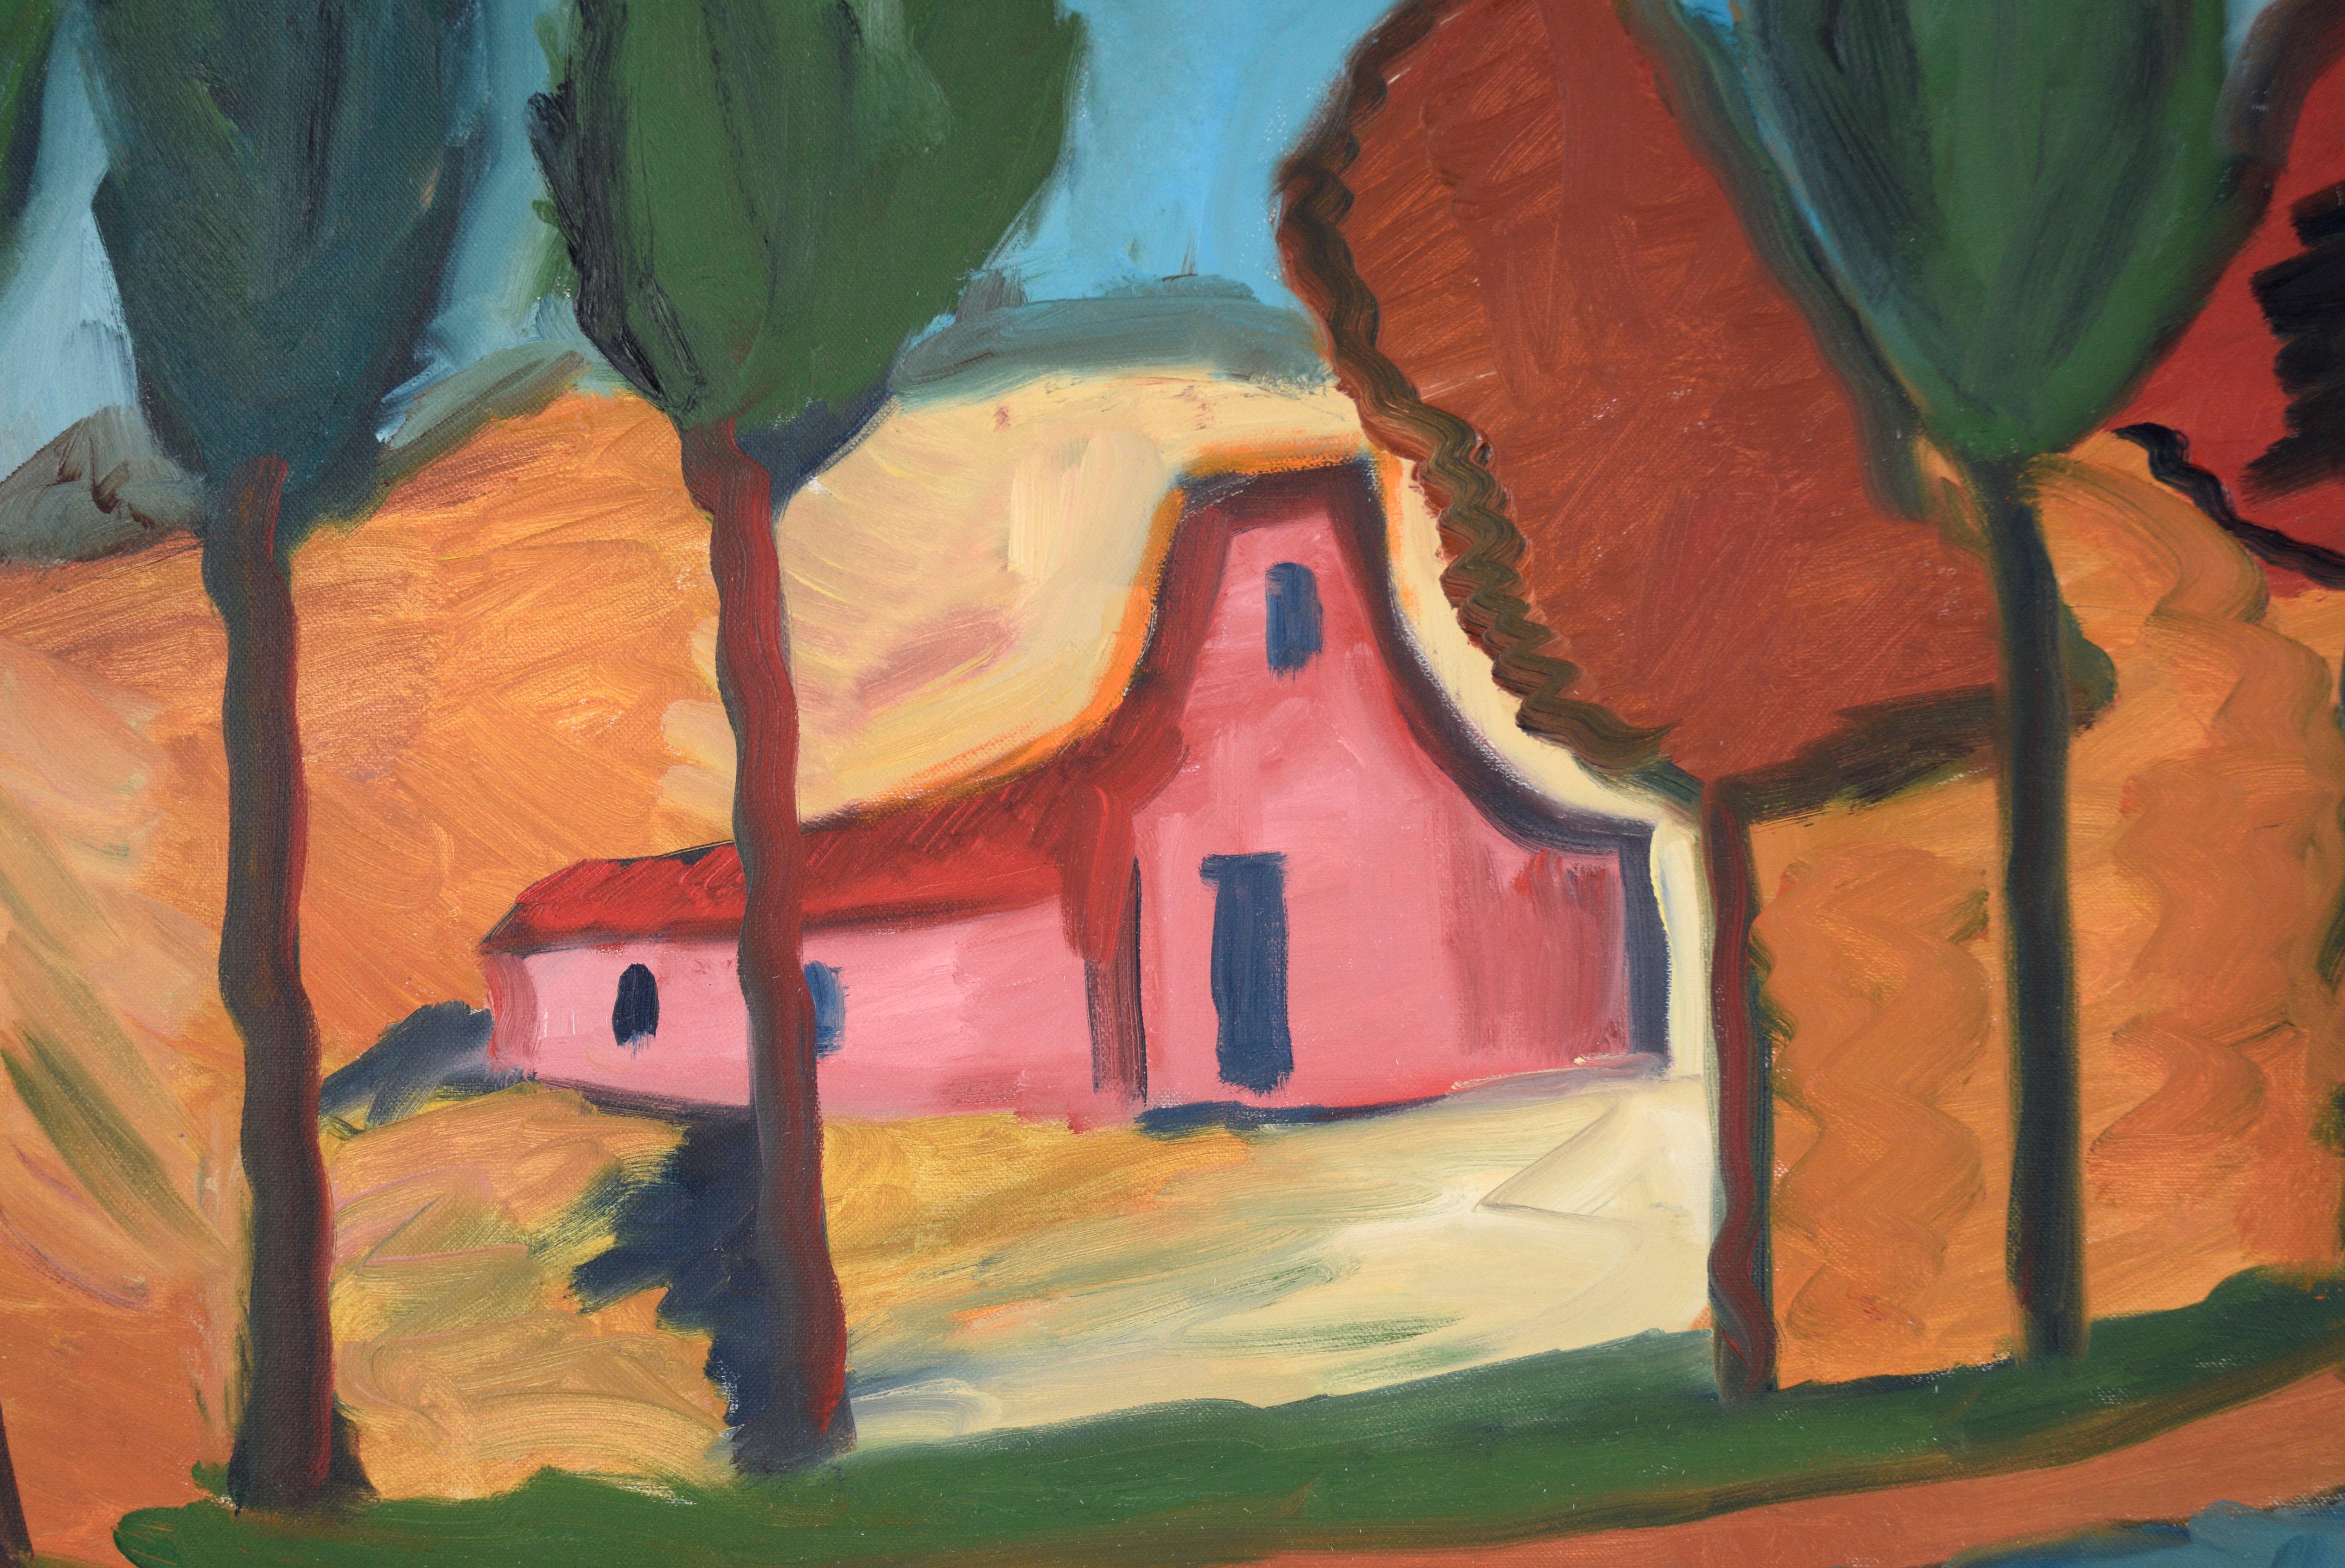 Grange belge au bord de la rivière - Paysage expressionniste à l'huile sur toile

Représentation vibrante d'une grange au bord d'une rivière par Gloria Takla (américaine/allemande, née en 1940). Une grange rose vif avec un toit rouge se trouve sur